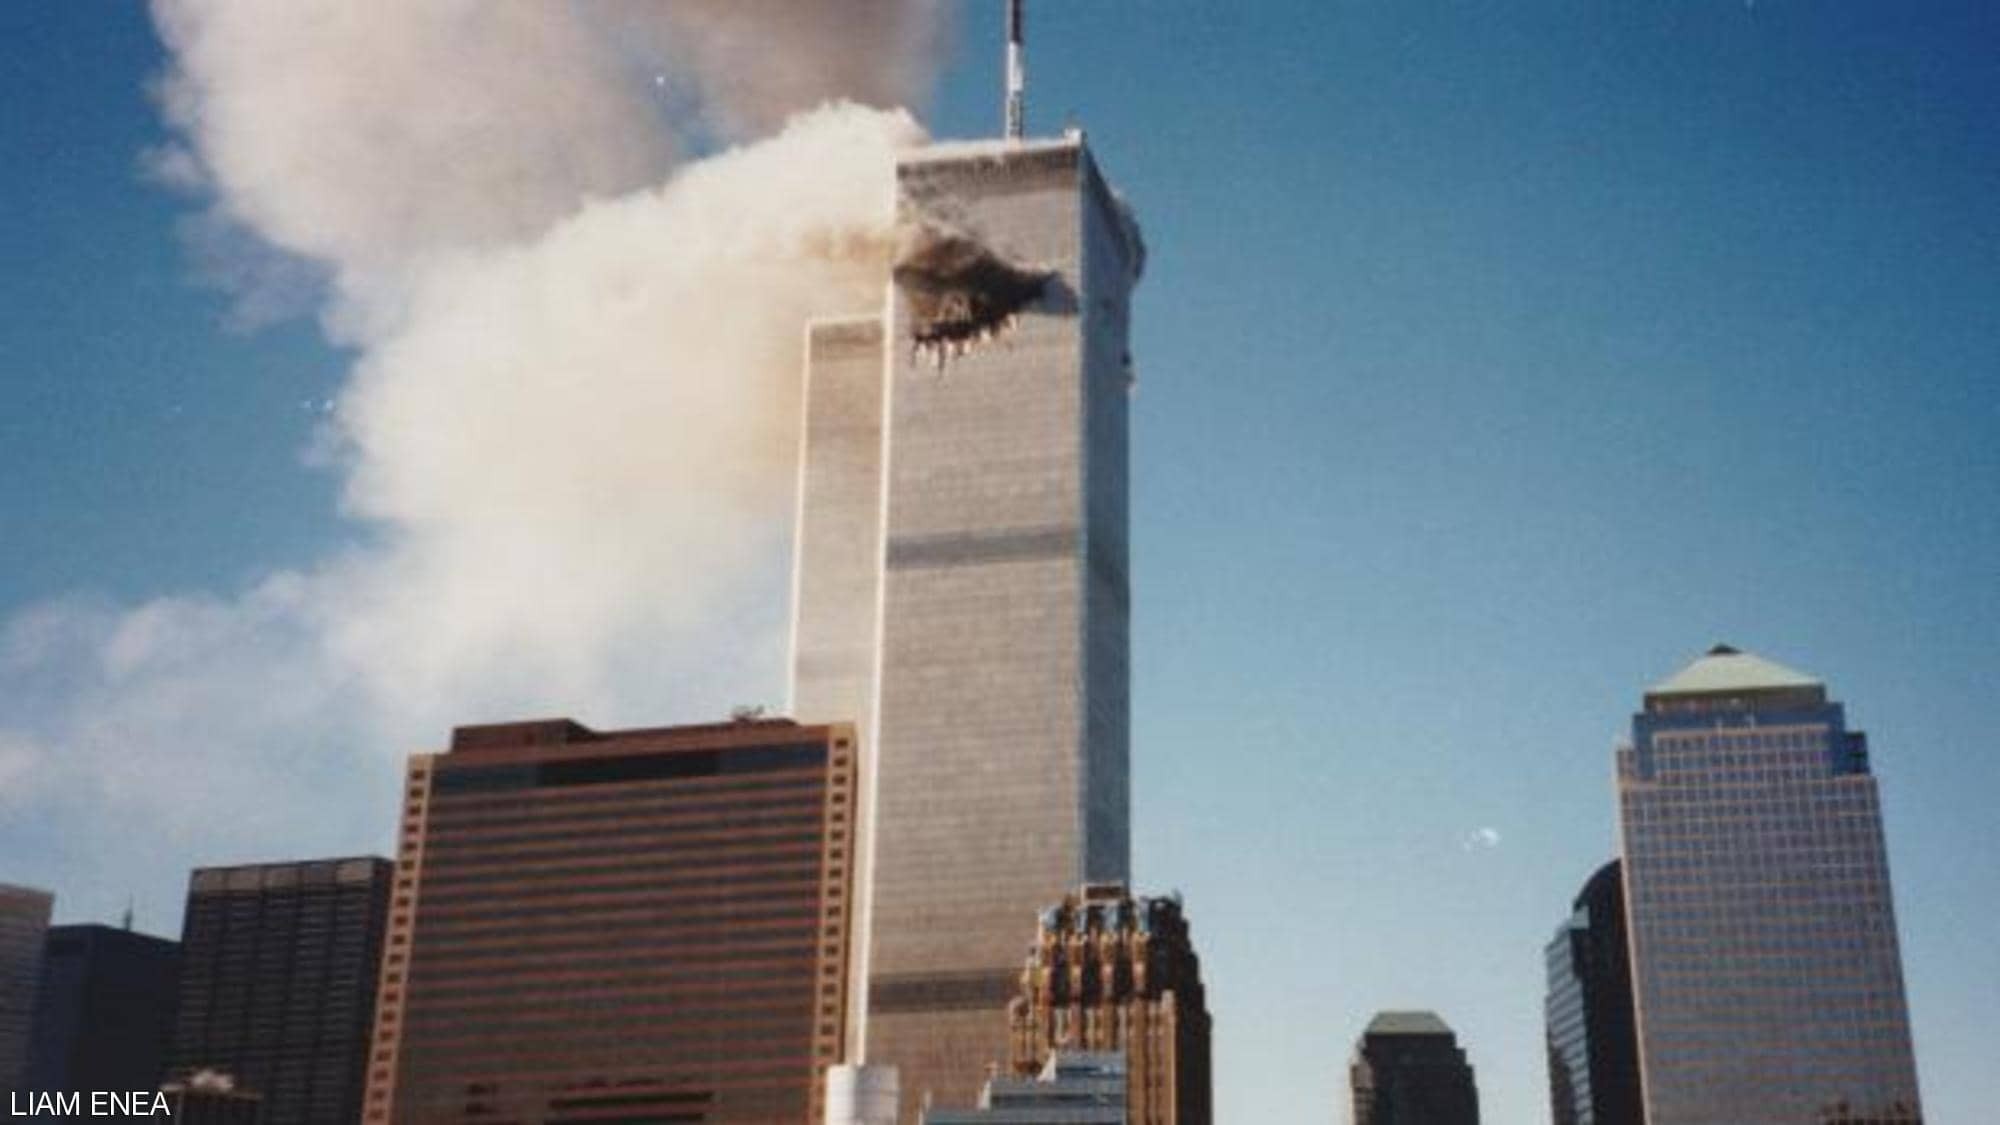 شاهدوا | اكتشاف صور غير مسبوقة لهجمات 11 سبتمبر في ألبوم عائلي